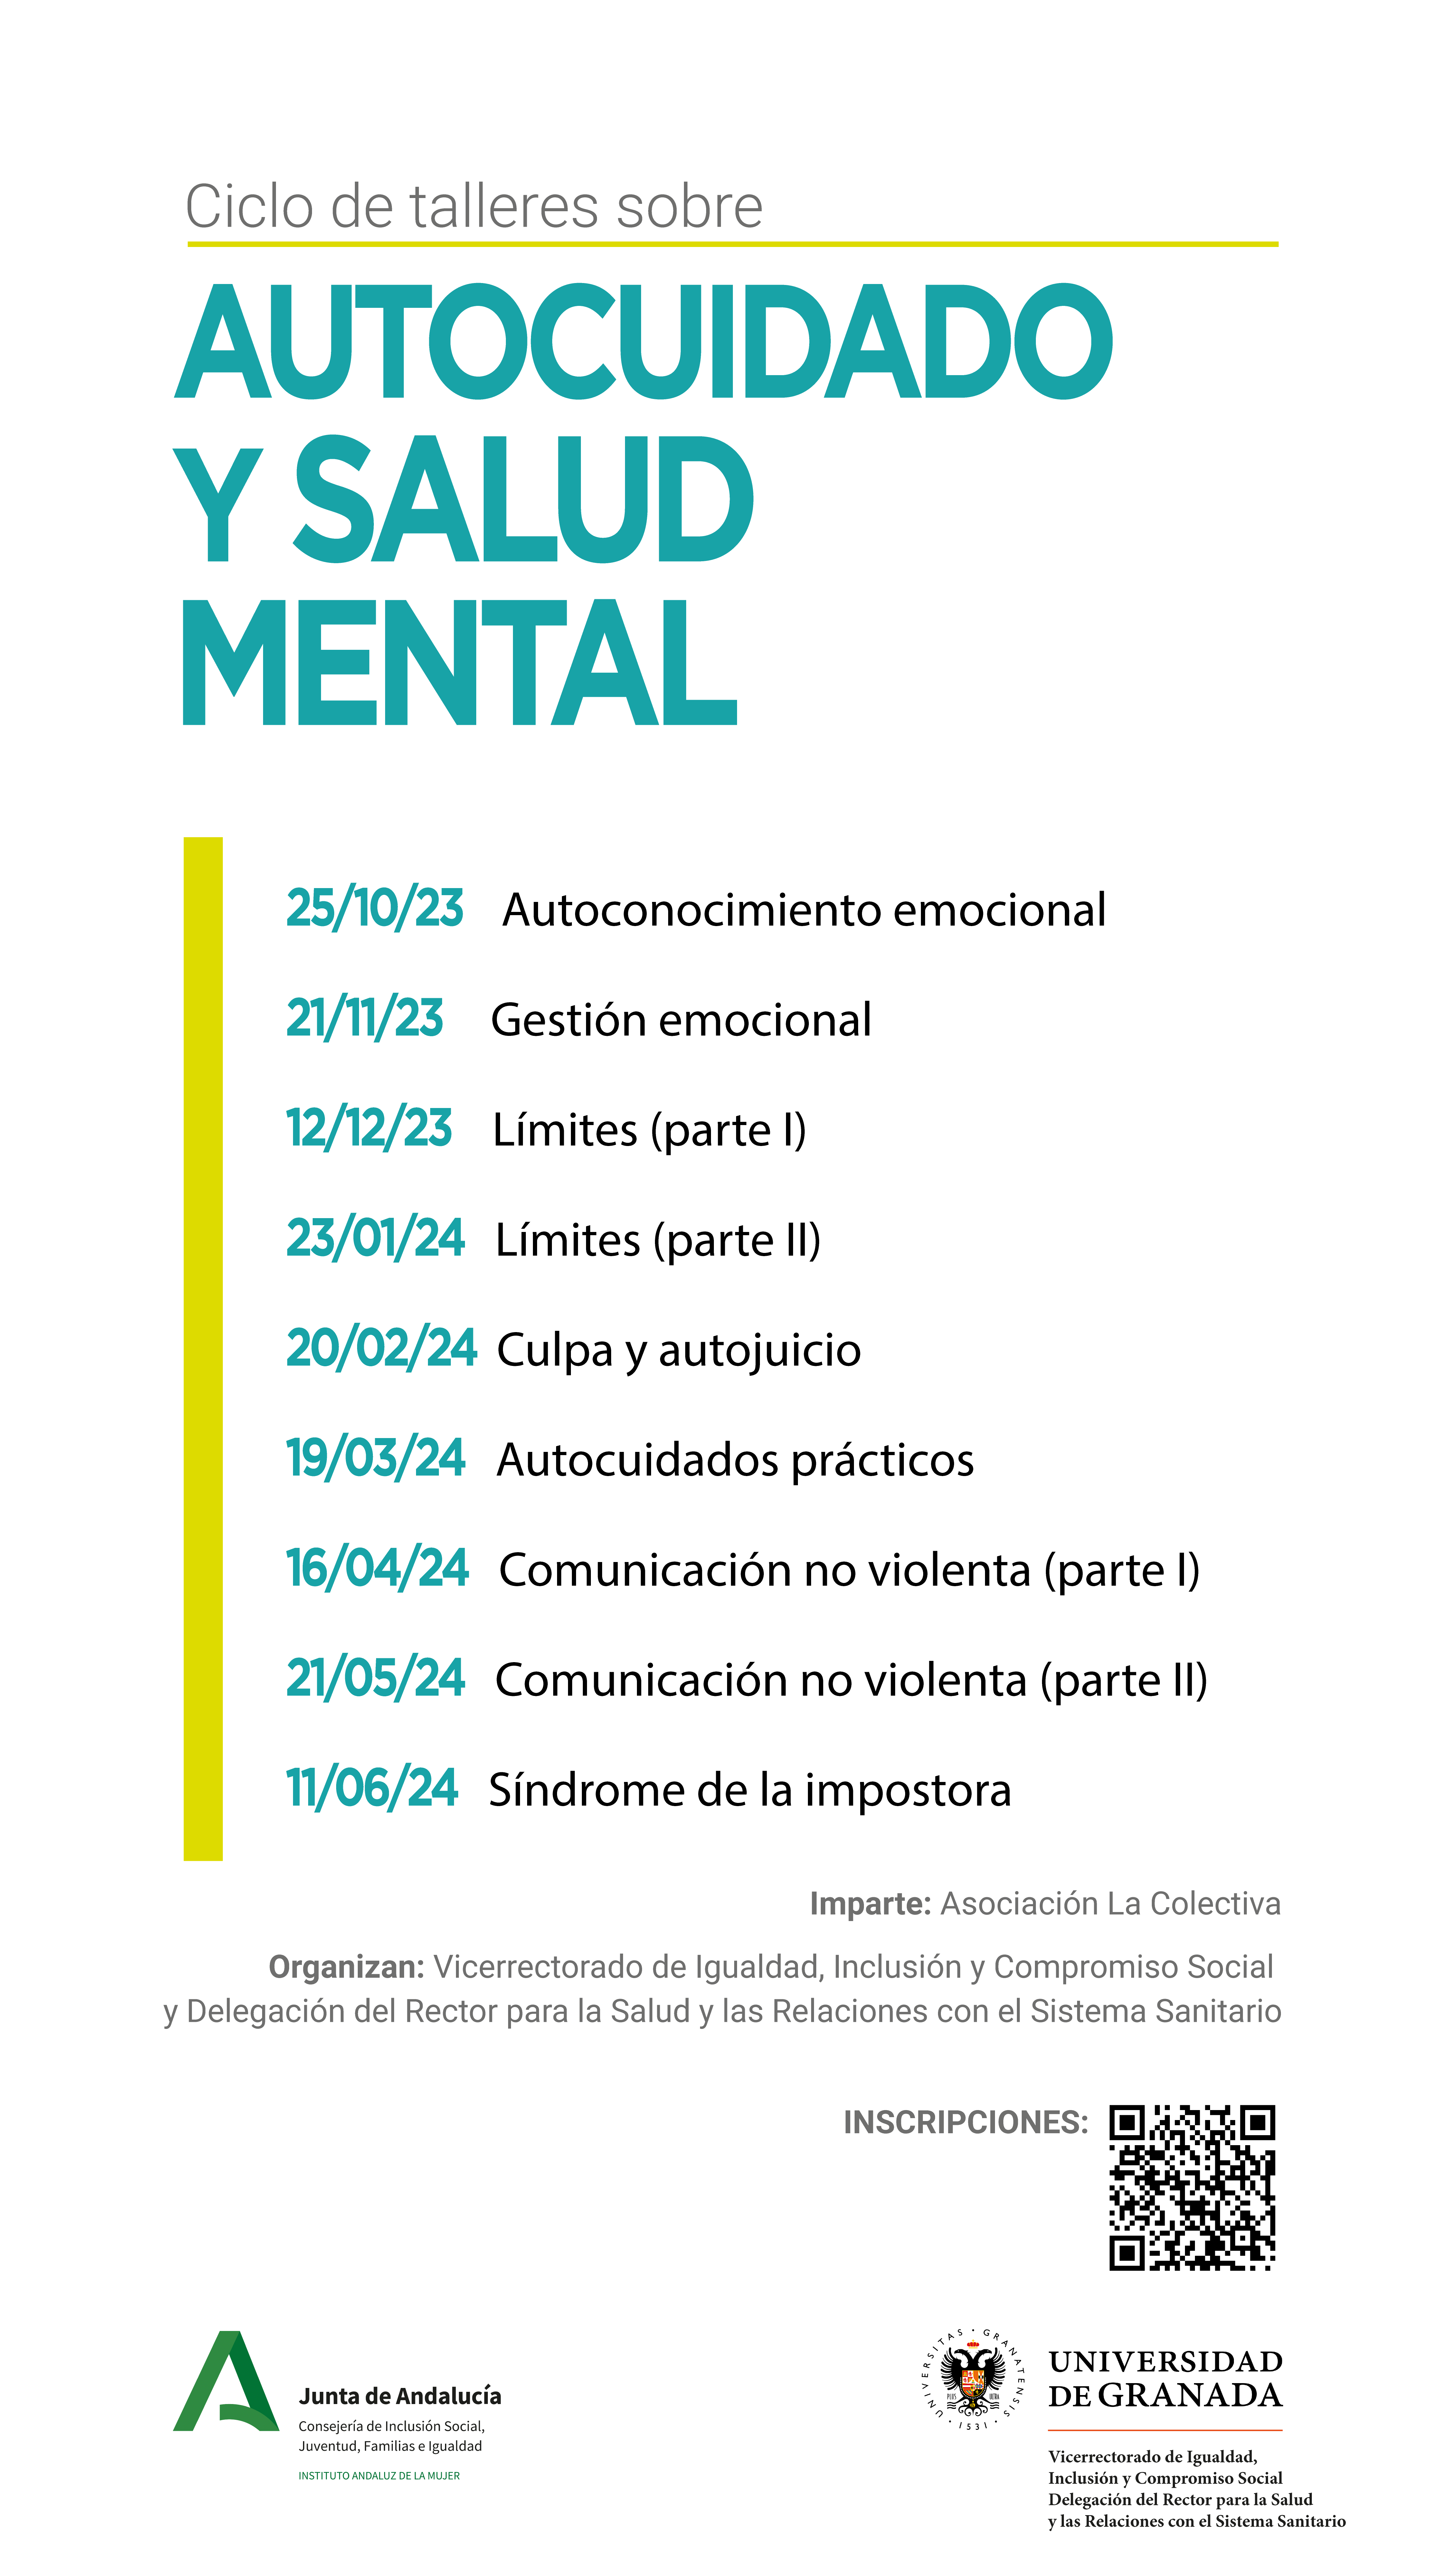 II Edición del Ciclo de Talleres sobre Autocuidado y Salud Mental